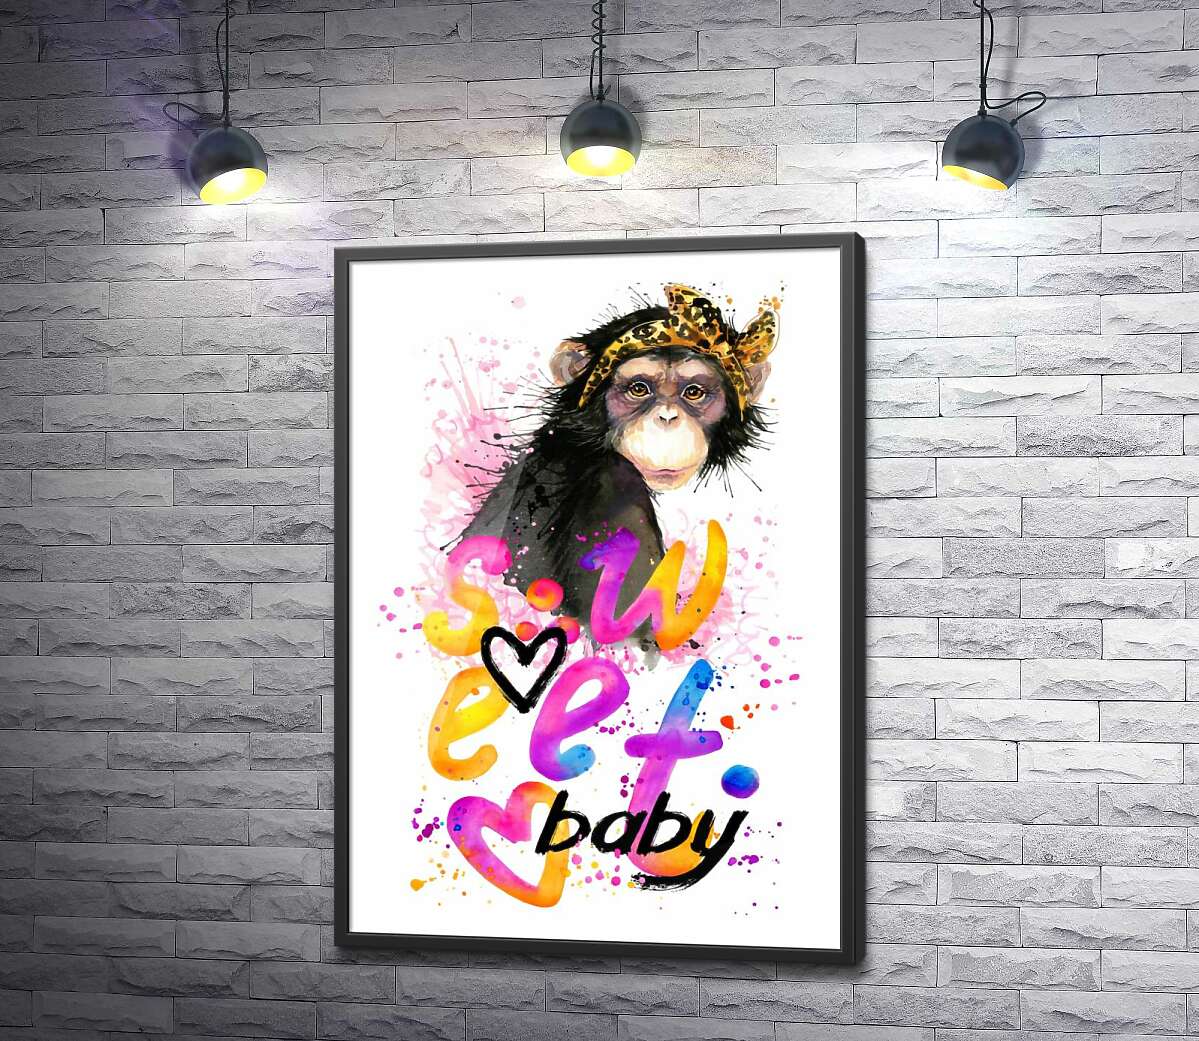 постер Модная обезьяна сидит над надписью "sweet baby"